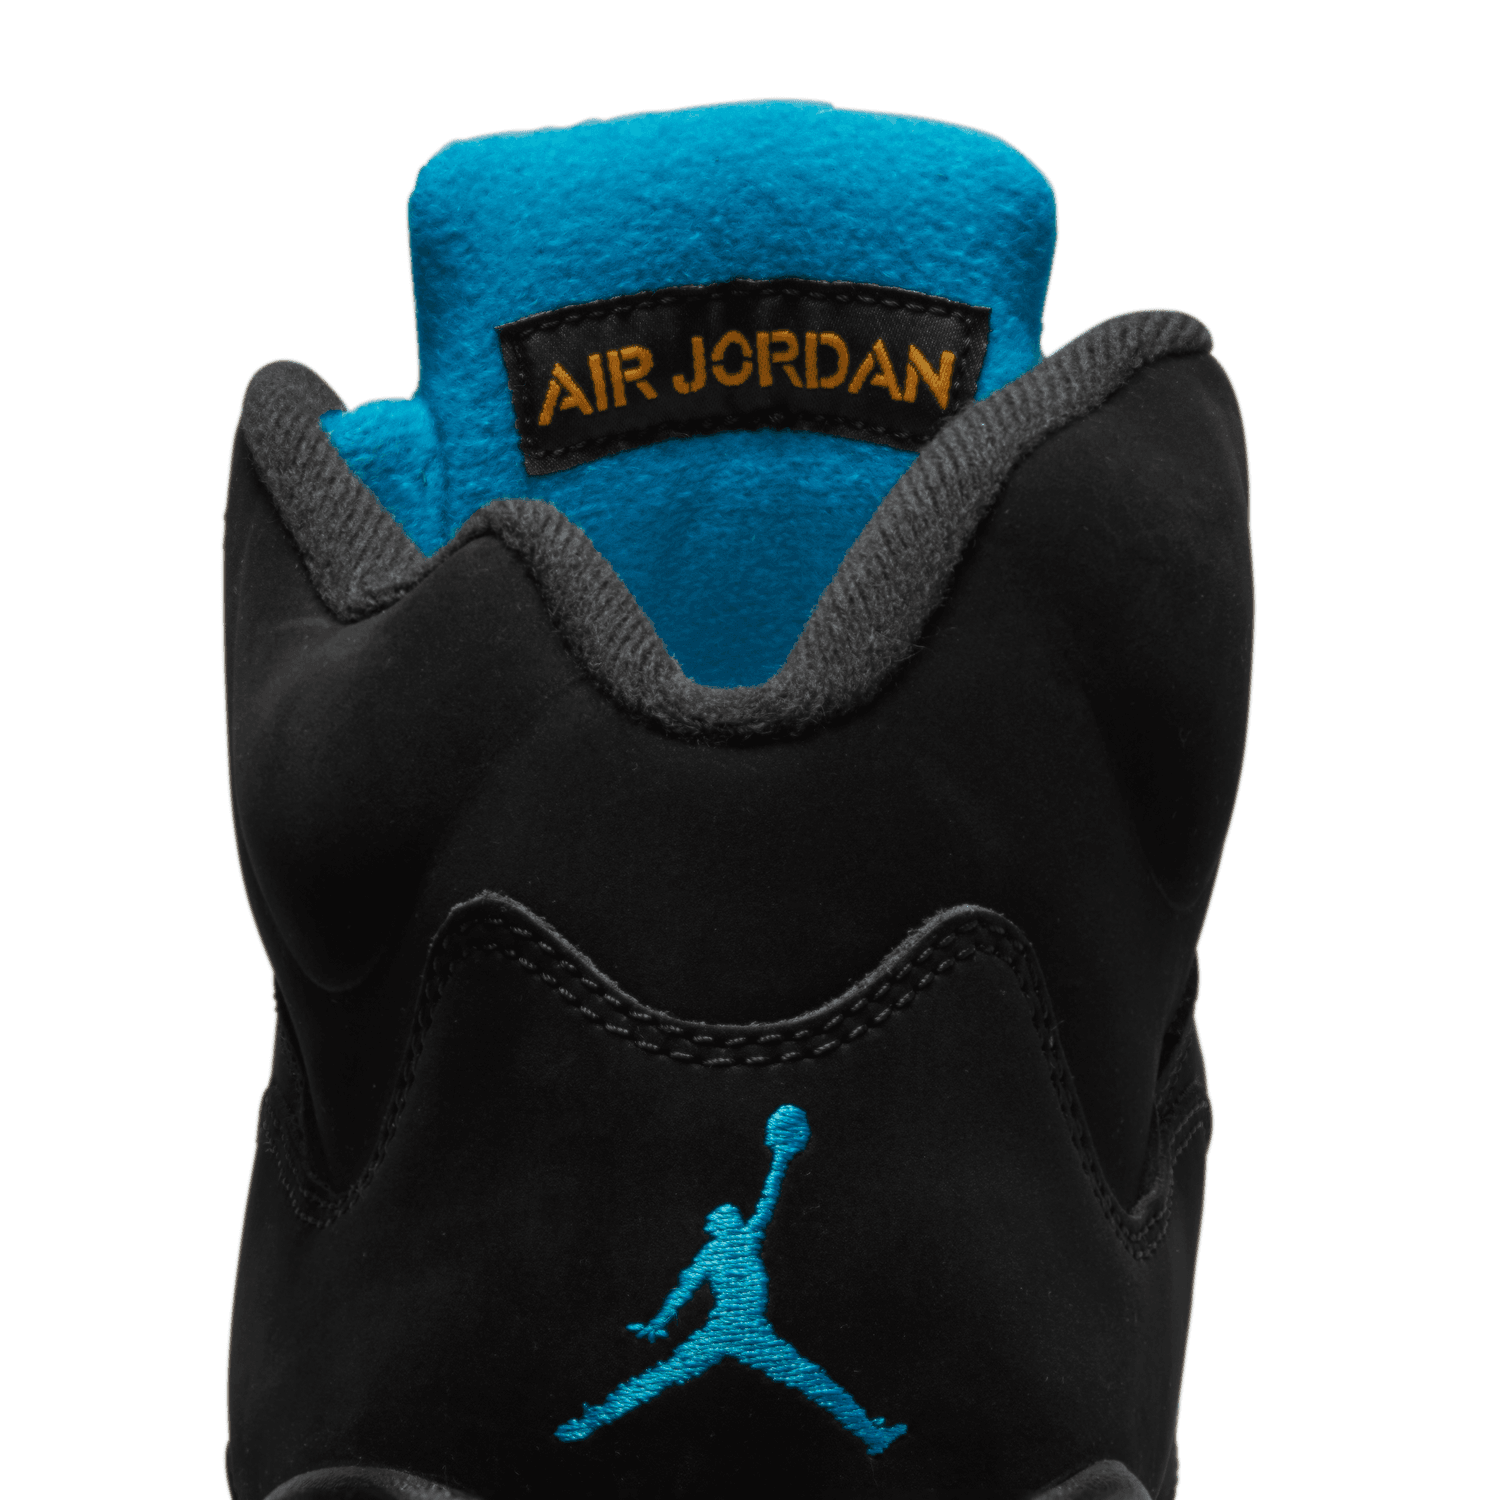 Air Jordan 5 Toronto Blue Jays by DeJesus Customs 